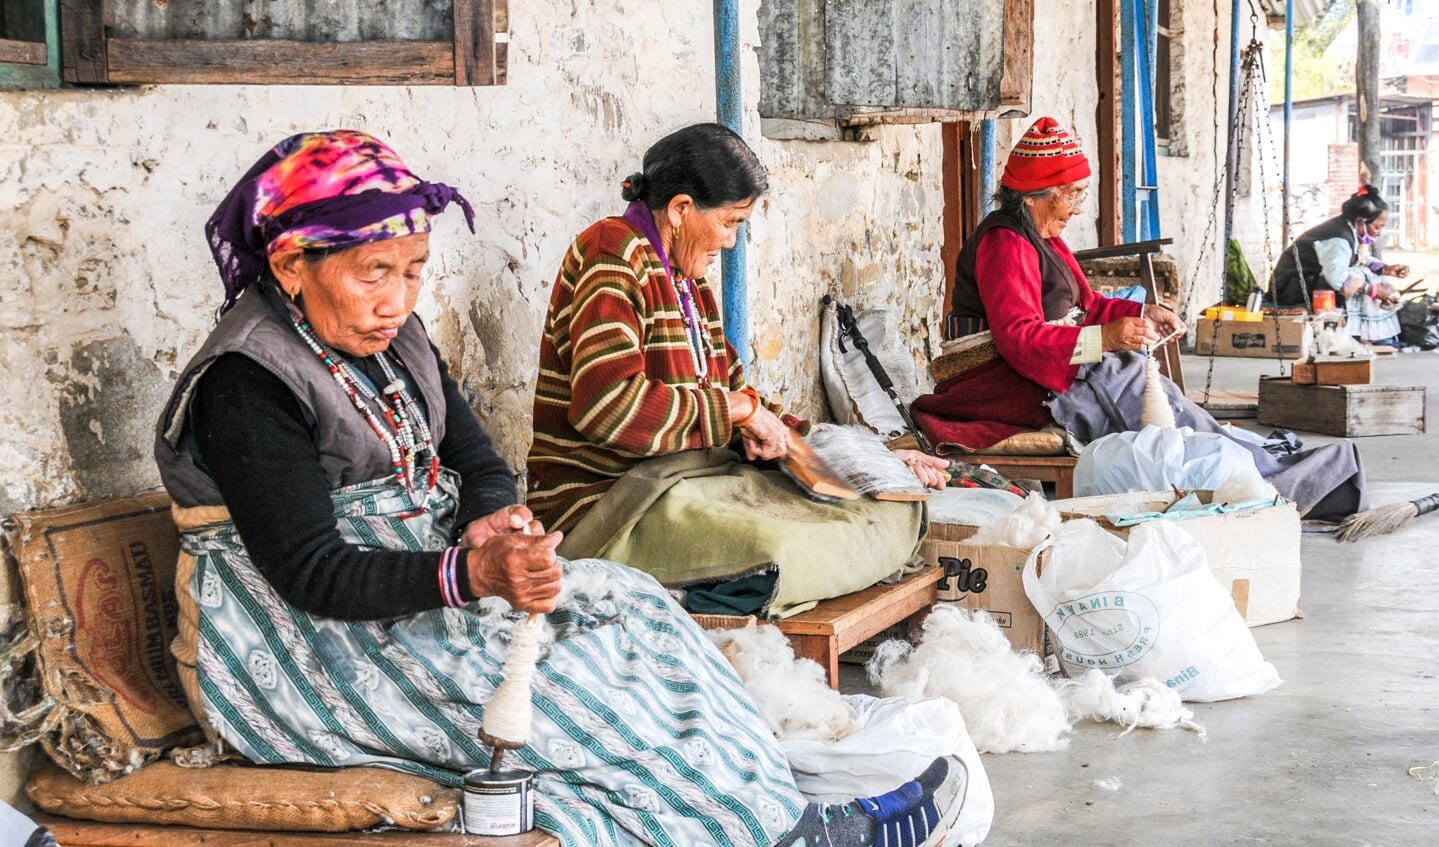 Tweede prijs: Tibetaanse vrouwen spinnen en kaarden wol. Saamhorig en verbonden. 